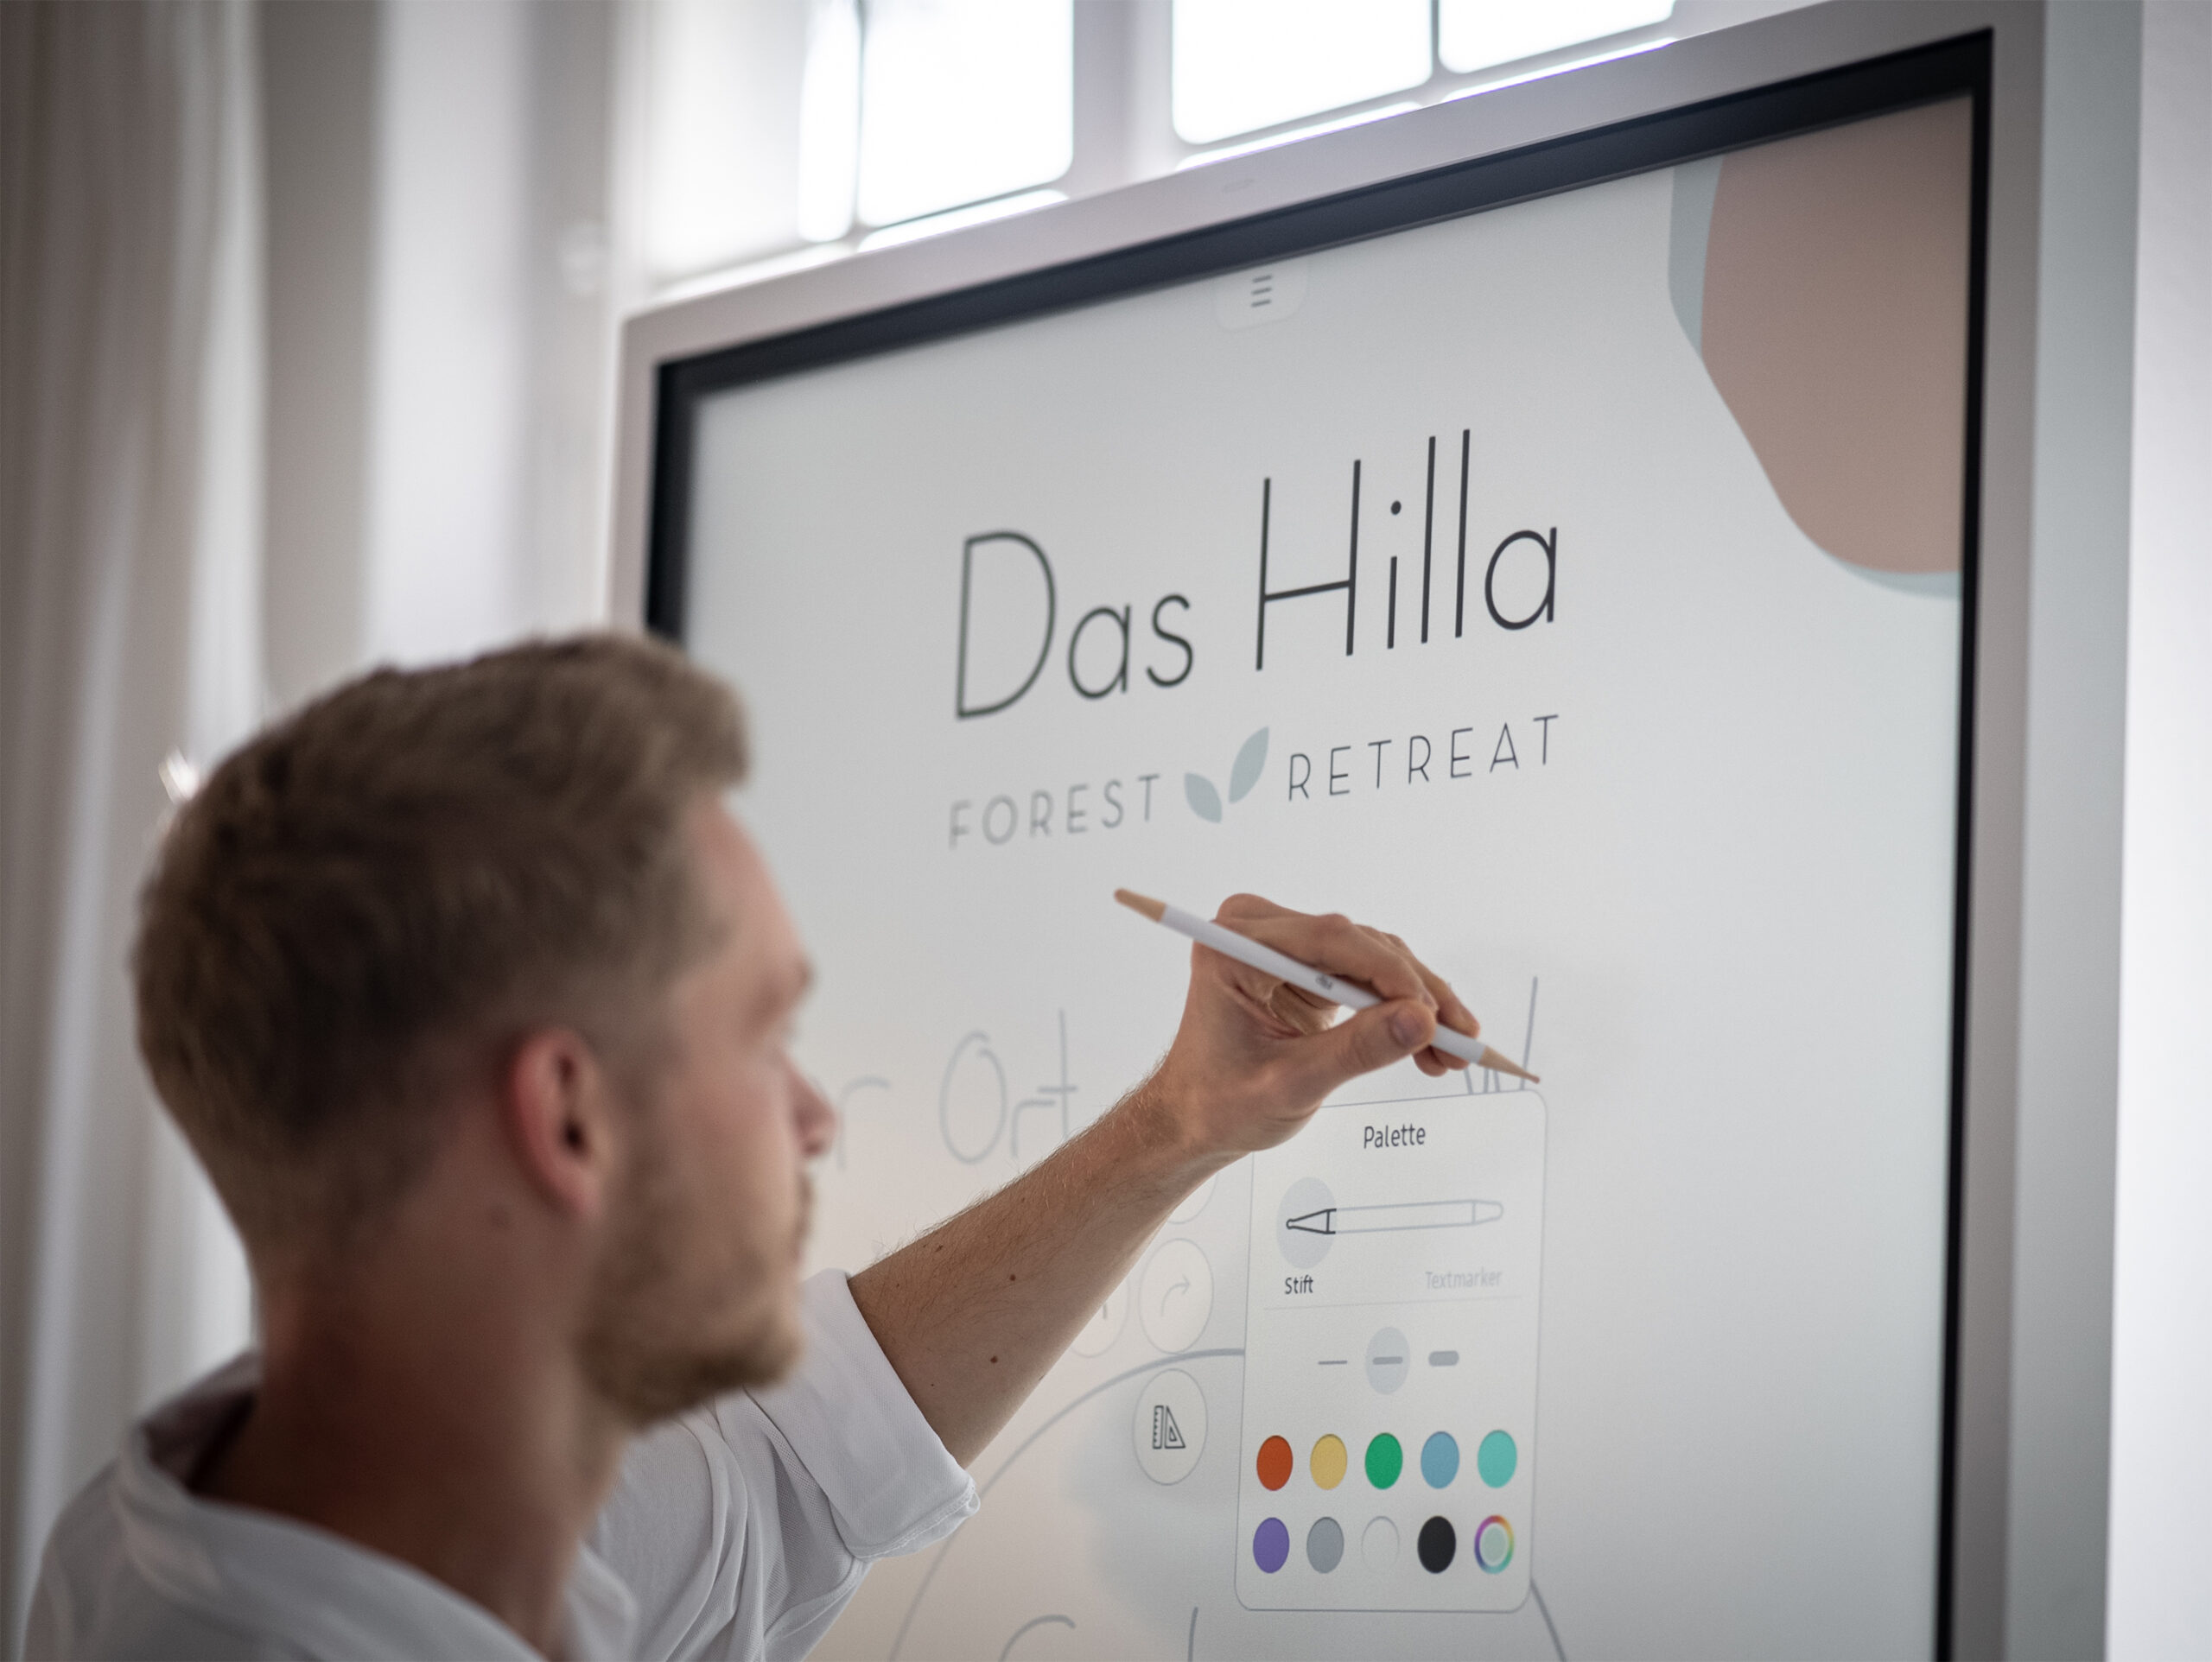 Samsung S-Flip mit "Das Hilla - Forest Retreat" Schriftzug